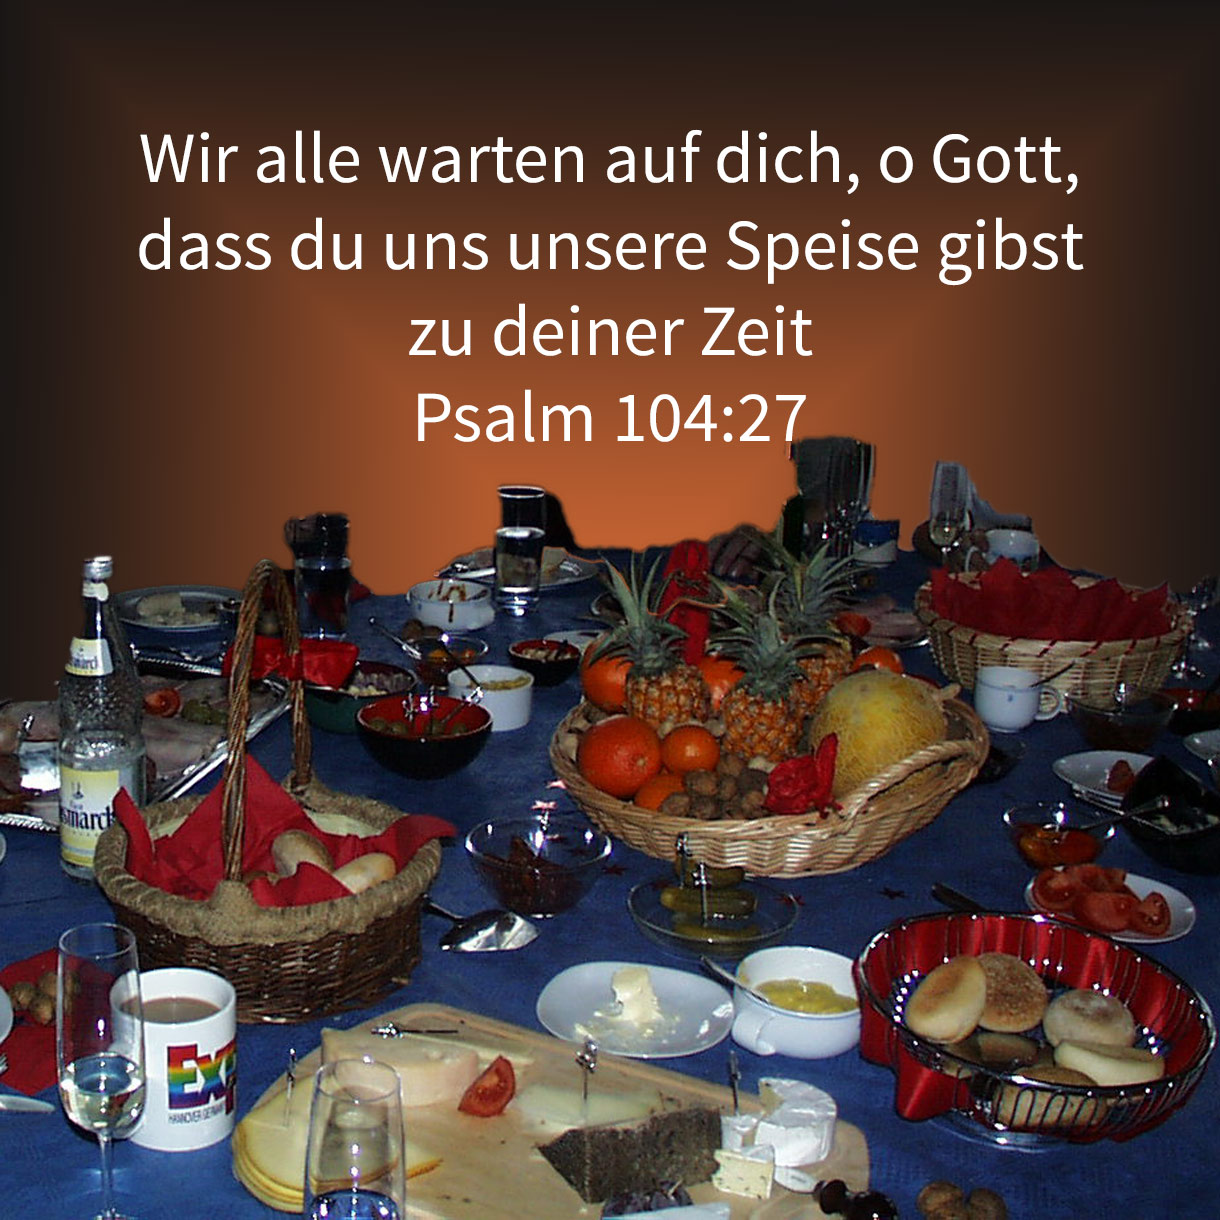  Sie alle warten auf dich, dass du ihnen ihre Speise gebest zu seiner Zeit ( Psalm 104,27 ) 